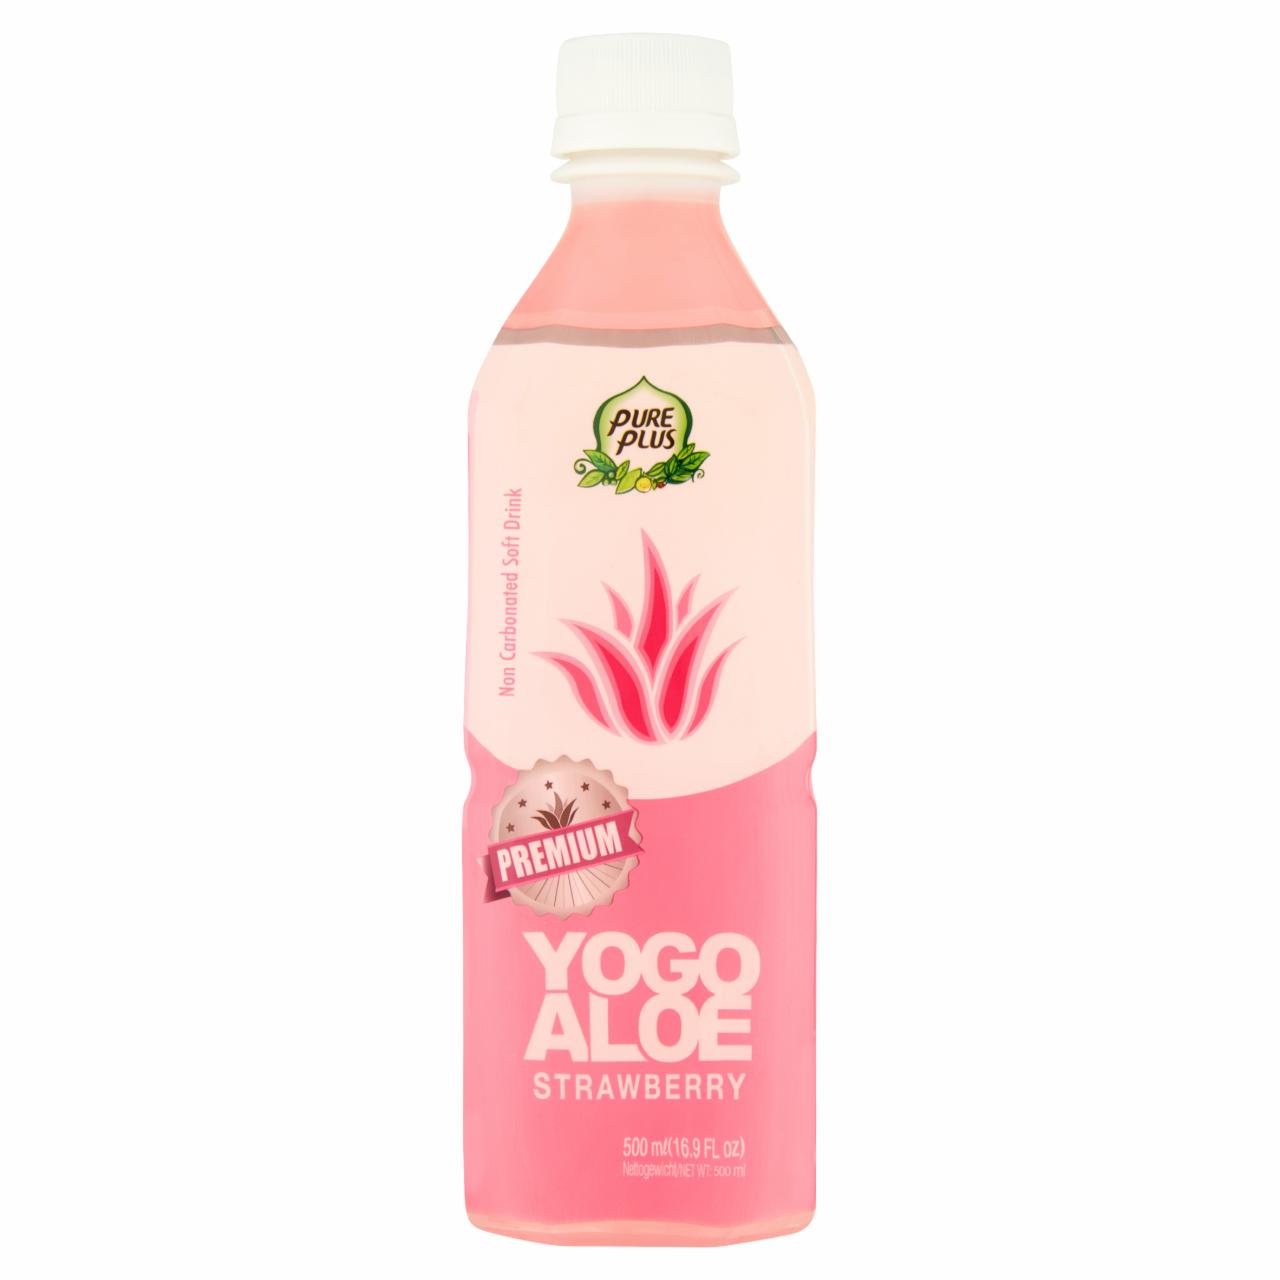 Zdjęcia - Pure Plus Premium Yogo Aloe Strawberry Napój z aloesem 500 ml